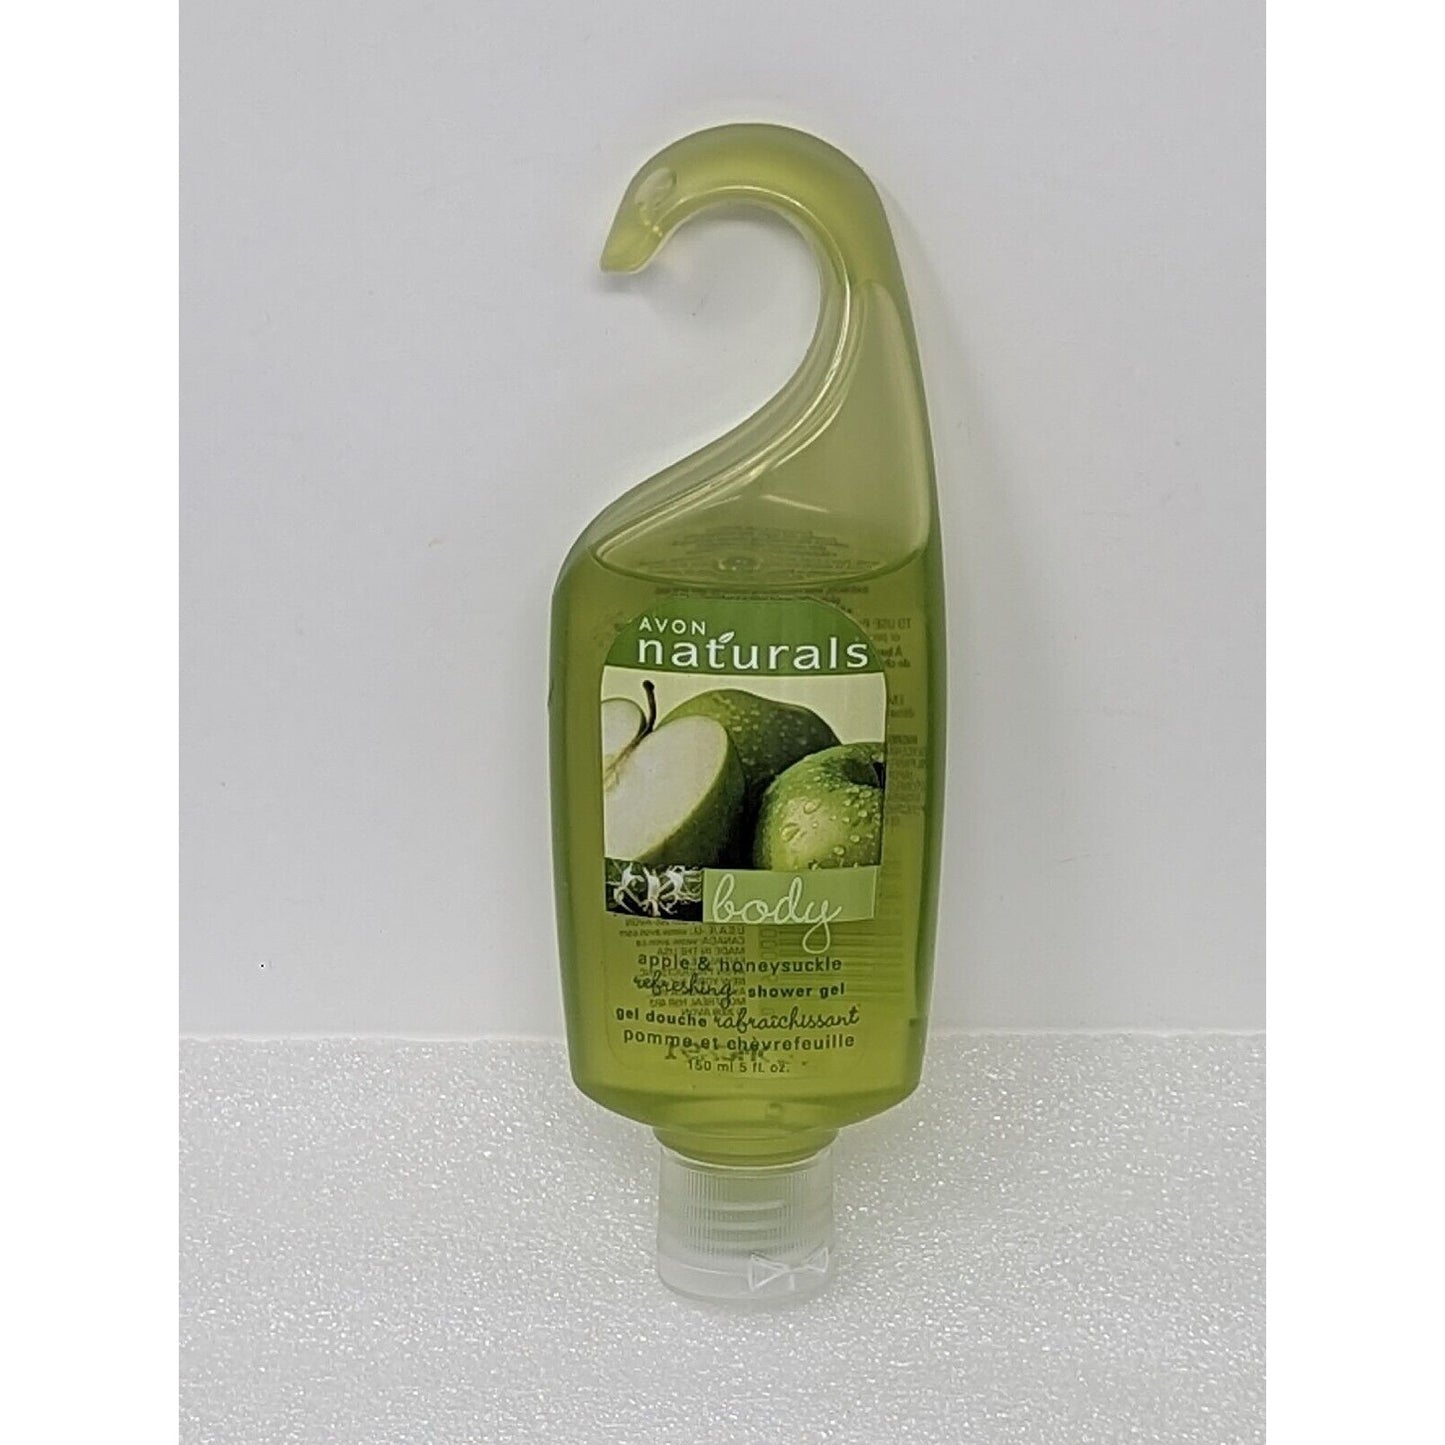 Avon Naturals Refreshing Shower Gel Apple & Honeysuckle 5 oz